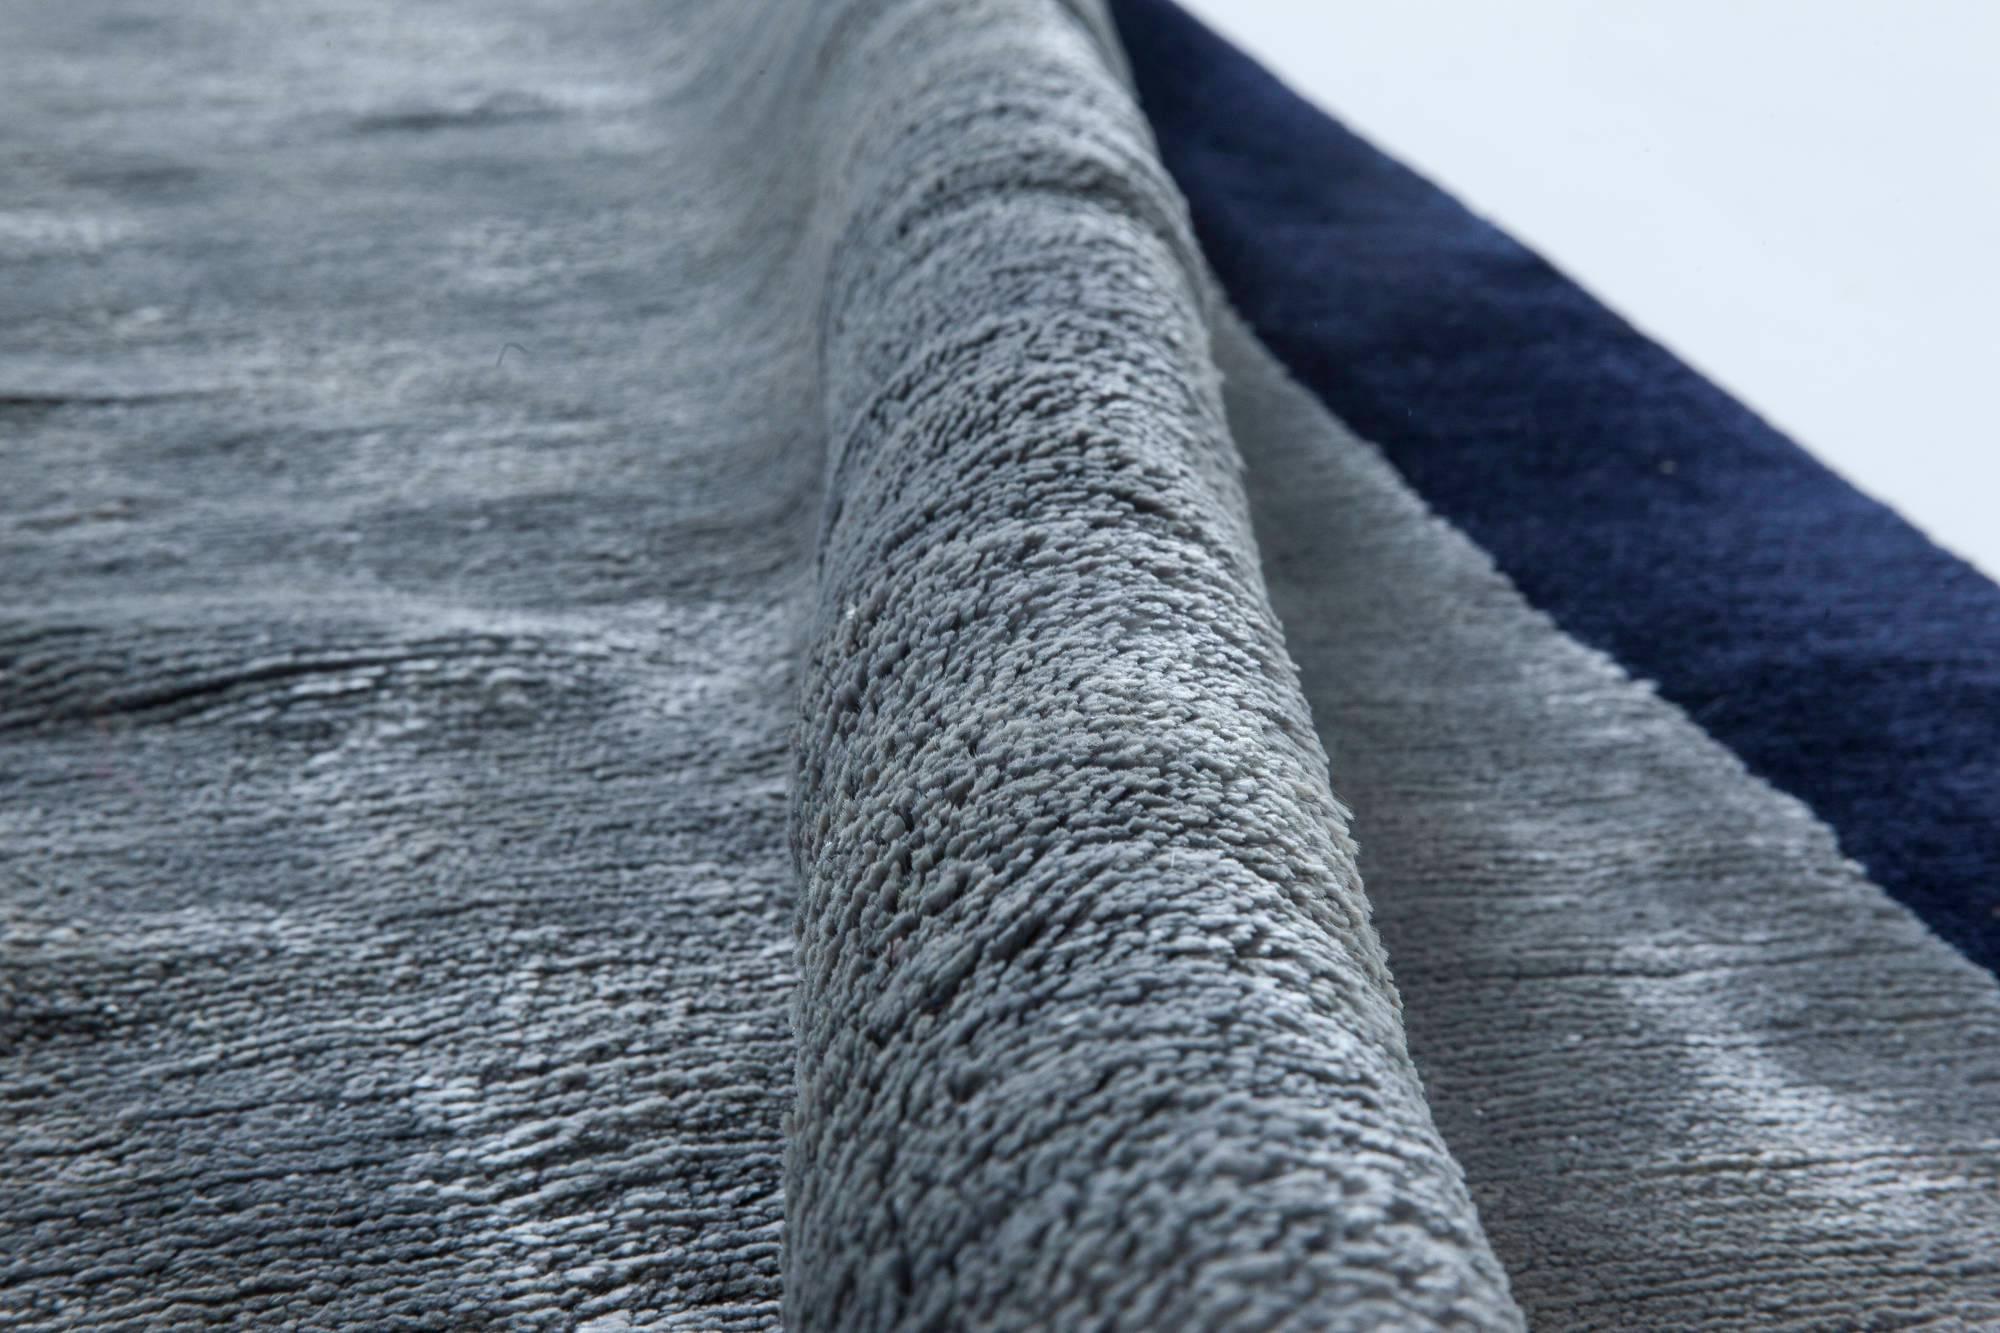 High-quality contemporary blue handmade silk rug by Doris Leslie Blau.
Size: 6.2